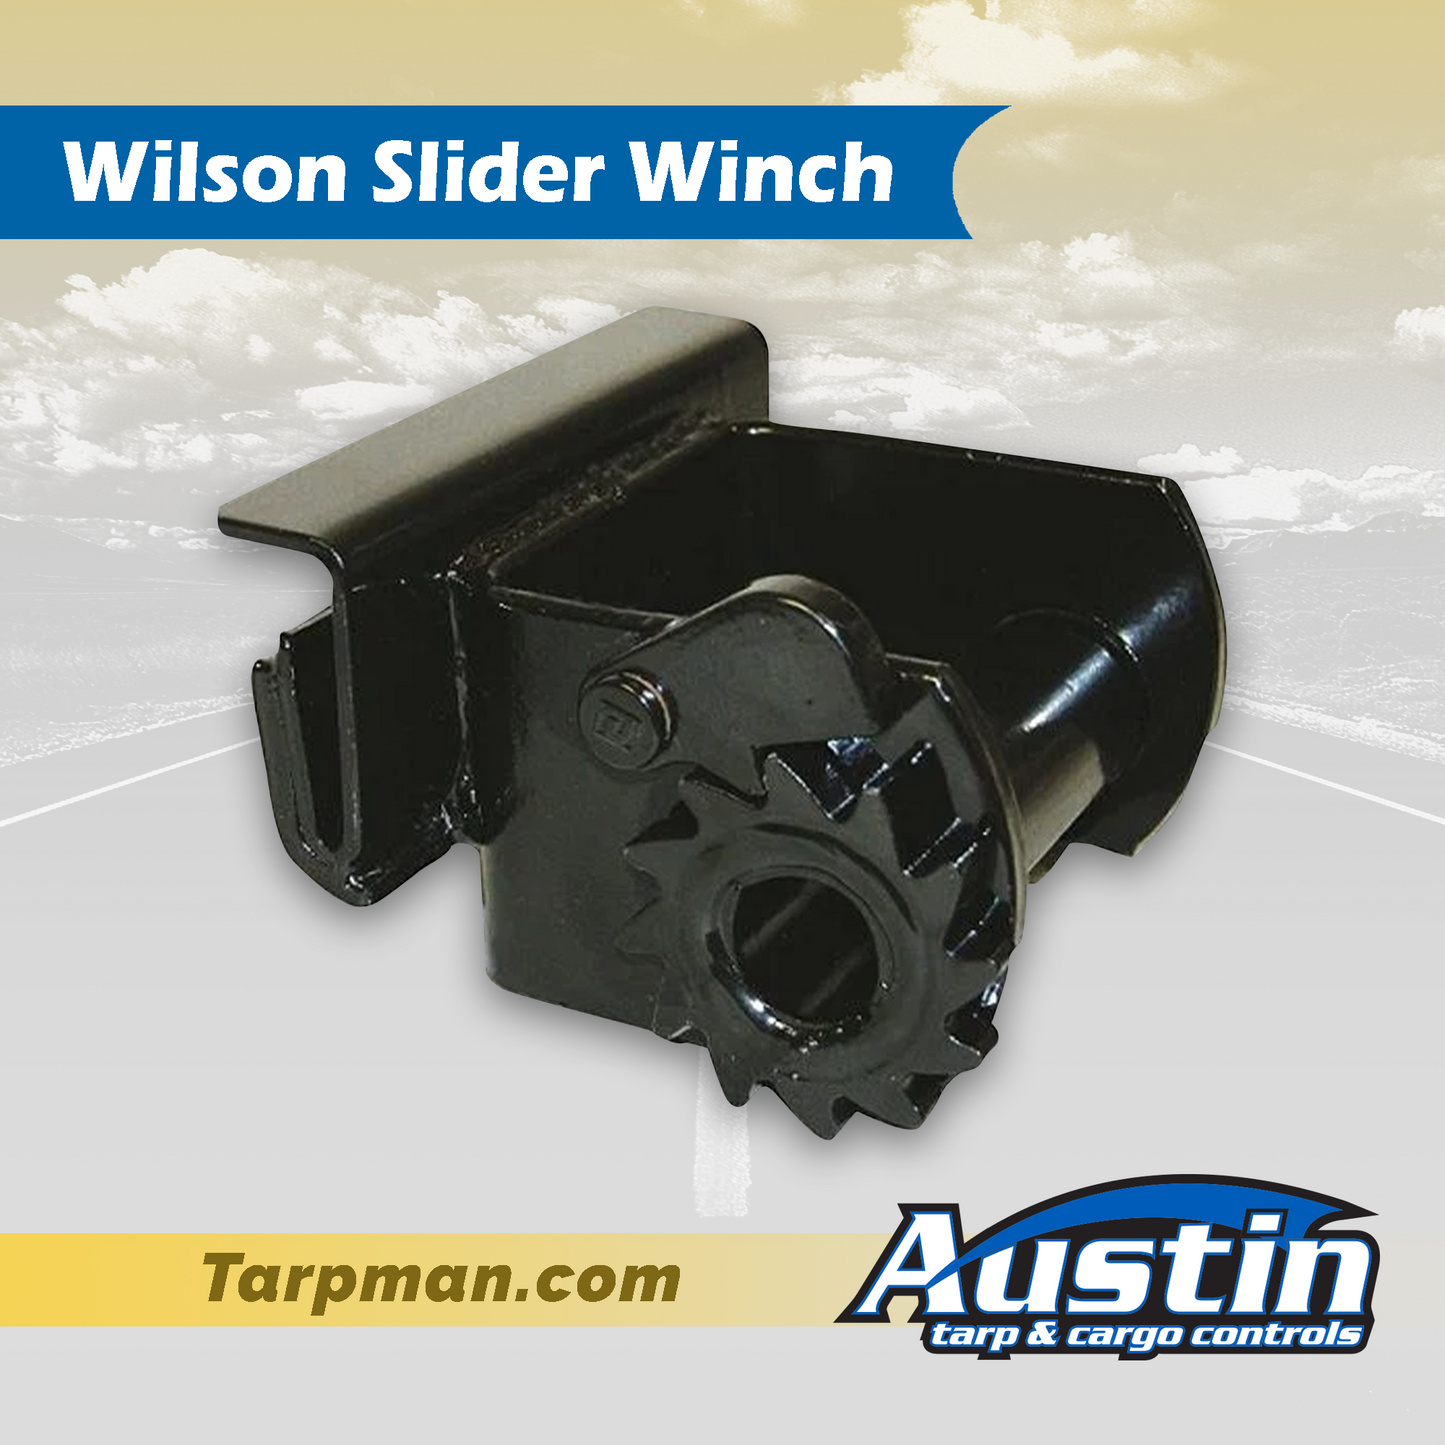 Wilson Slider Winch